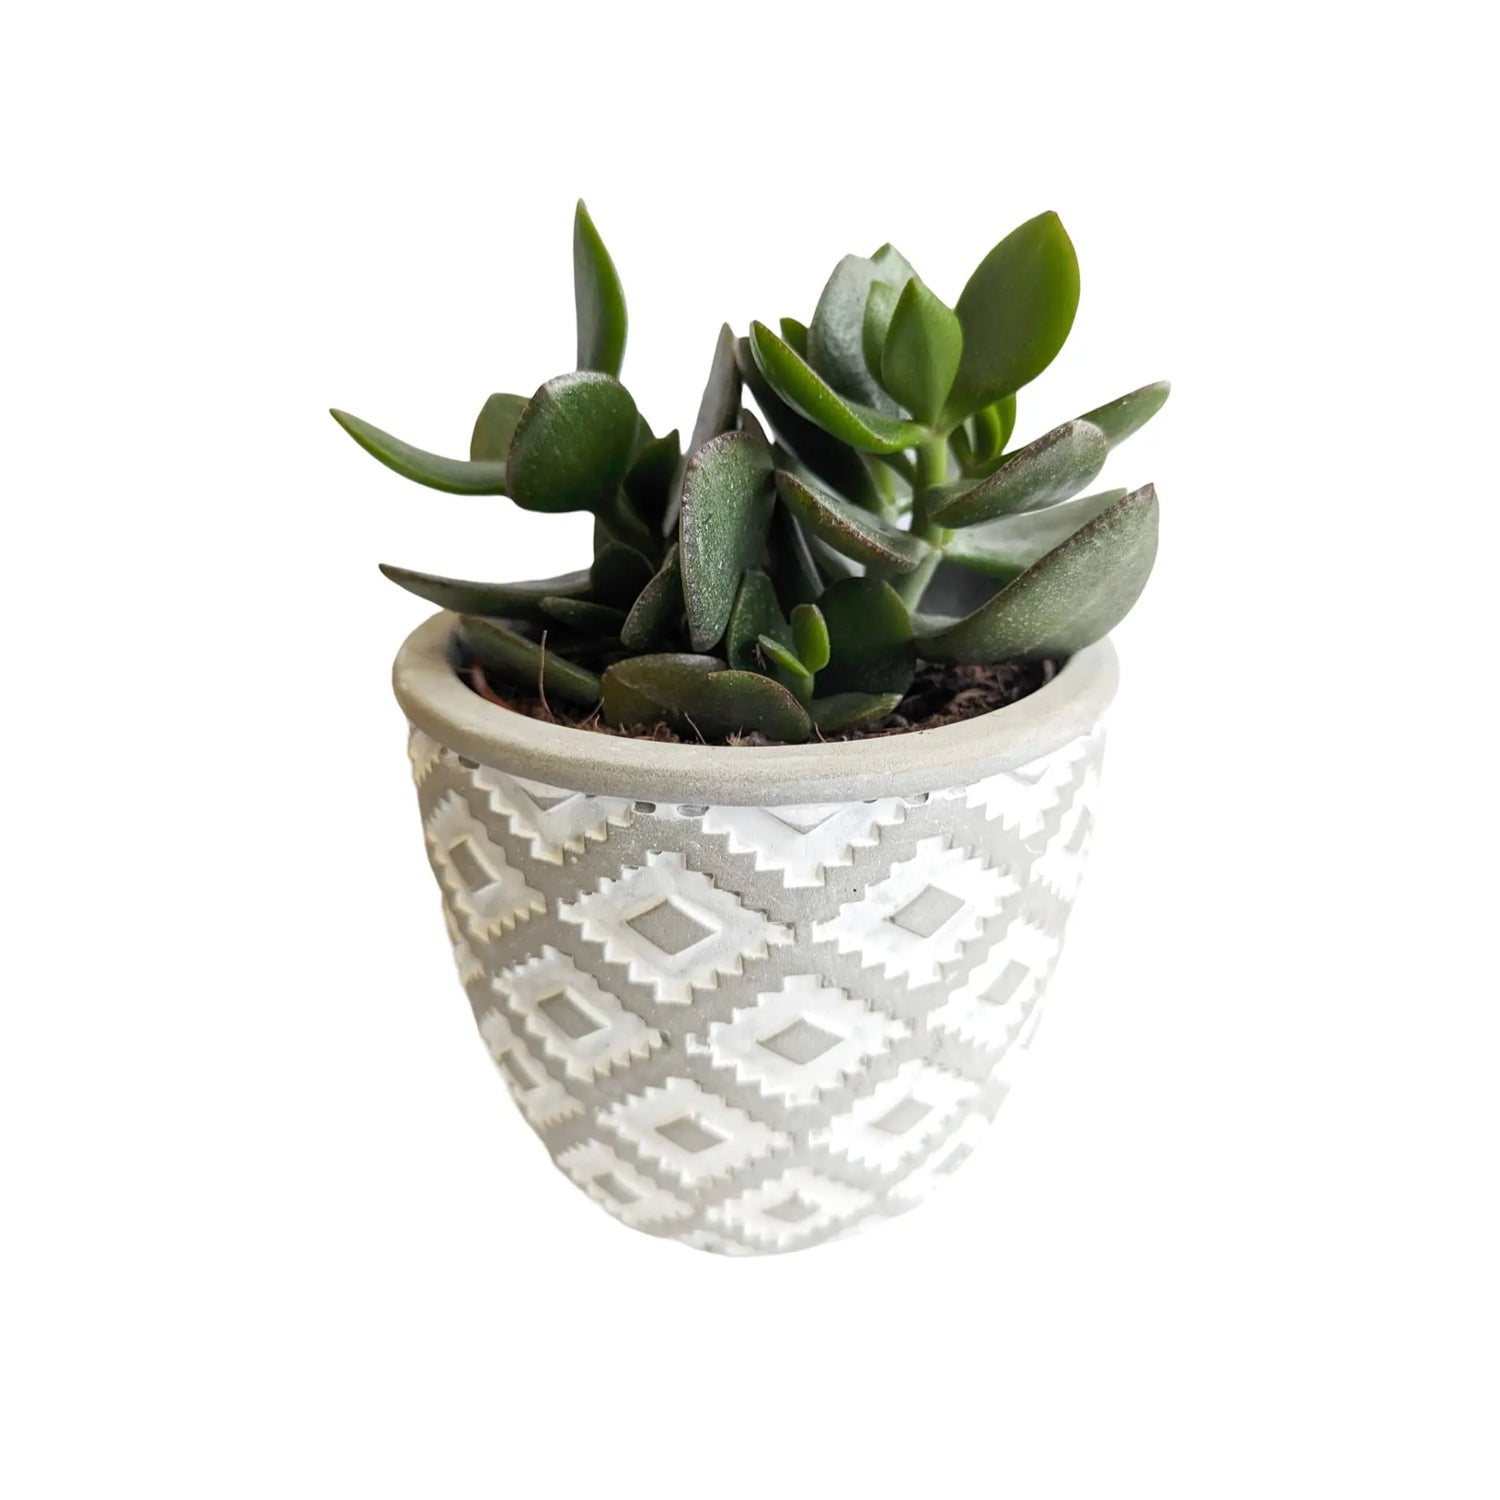 A Succulent Gift In Decorative Pot Leaf Culture